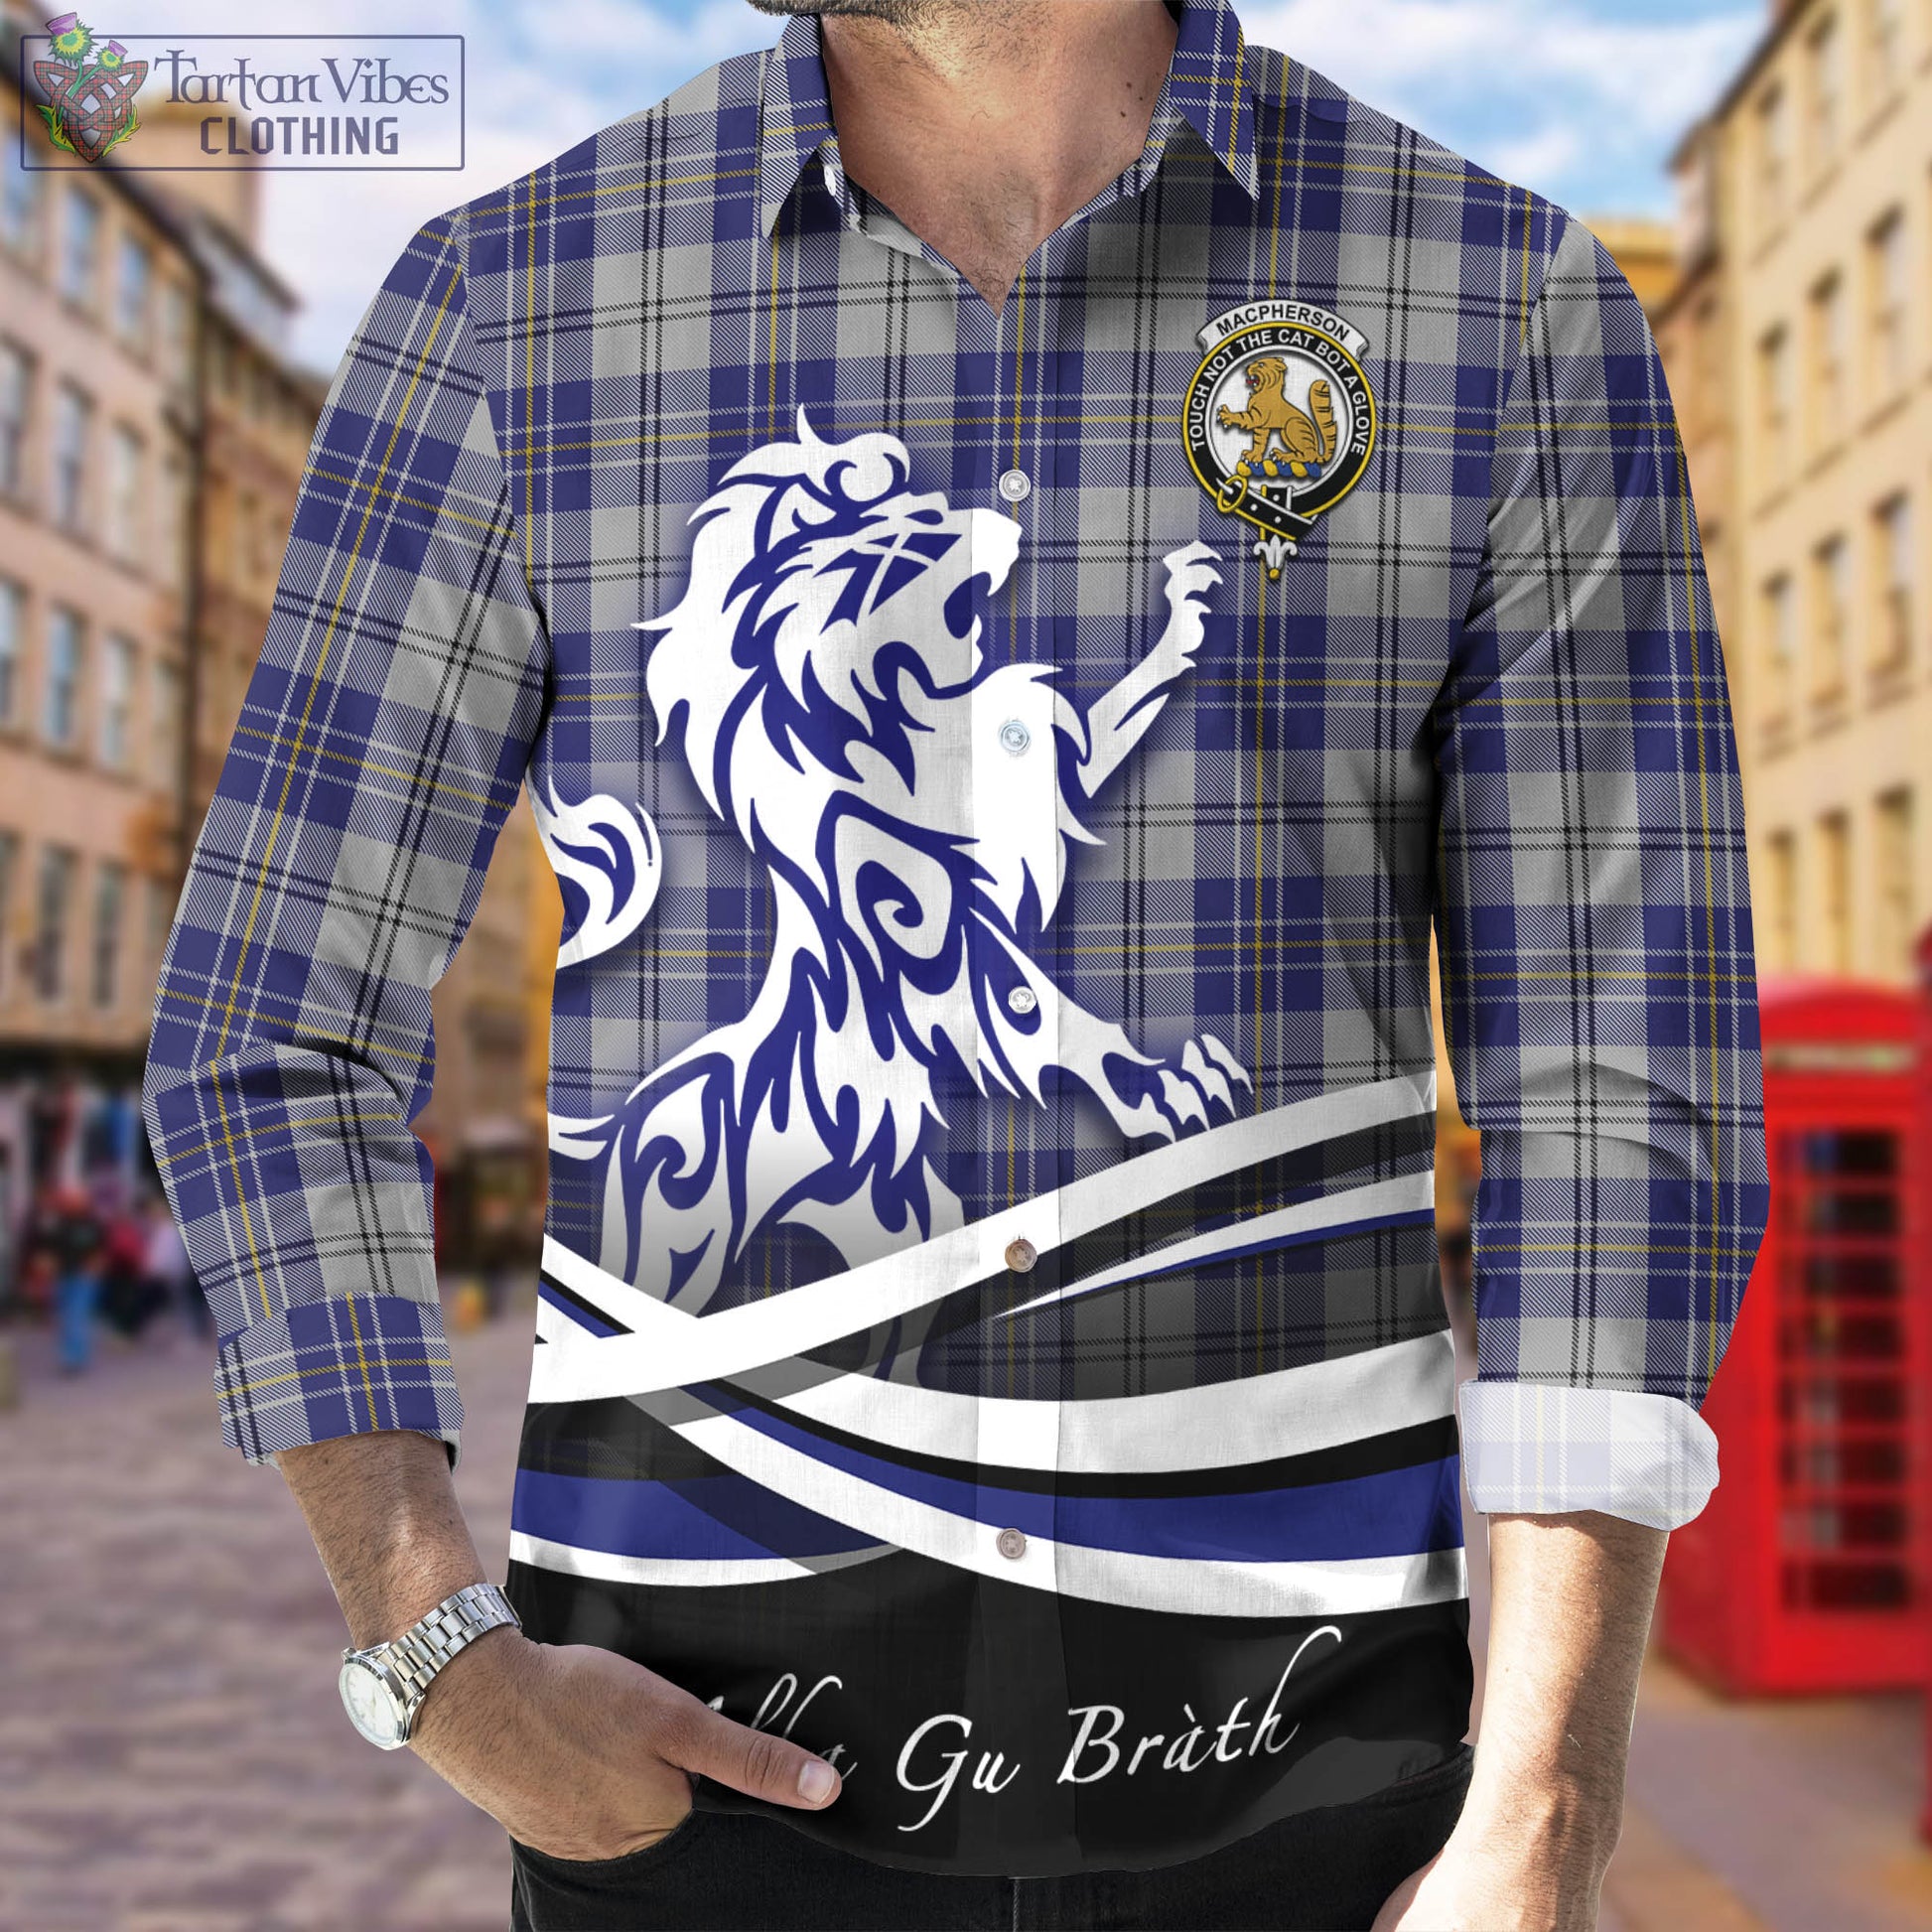 macpherson-dress-blue-tartan-long-sleeve-button-up-shirt-with-alba-gu-brath-regal-lion-emblem